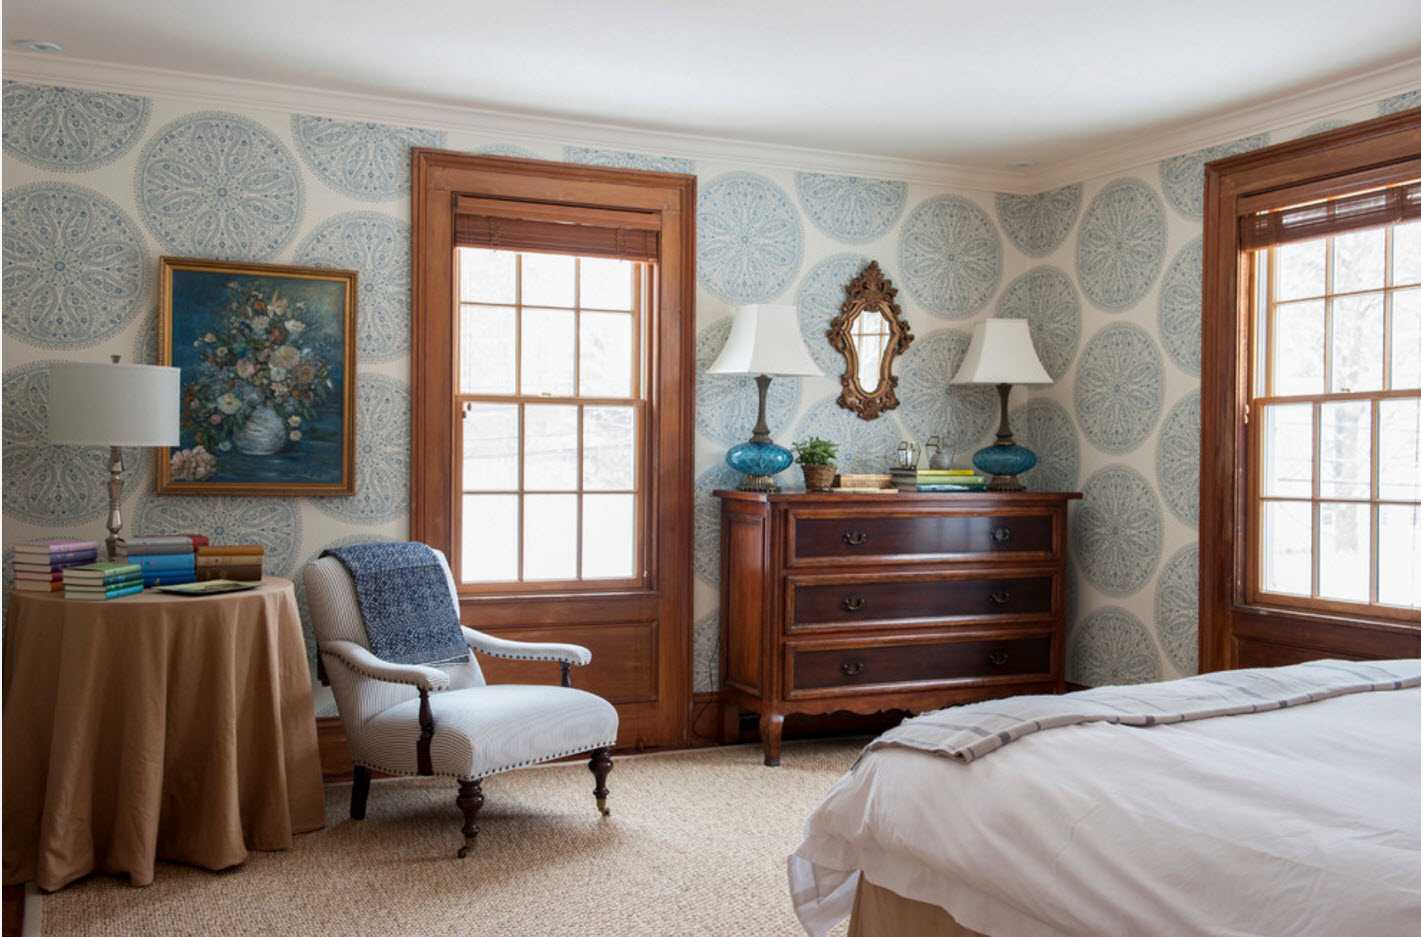 50 фото идей красивых обоев в интерьере гостиной комнаты: